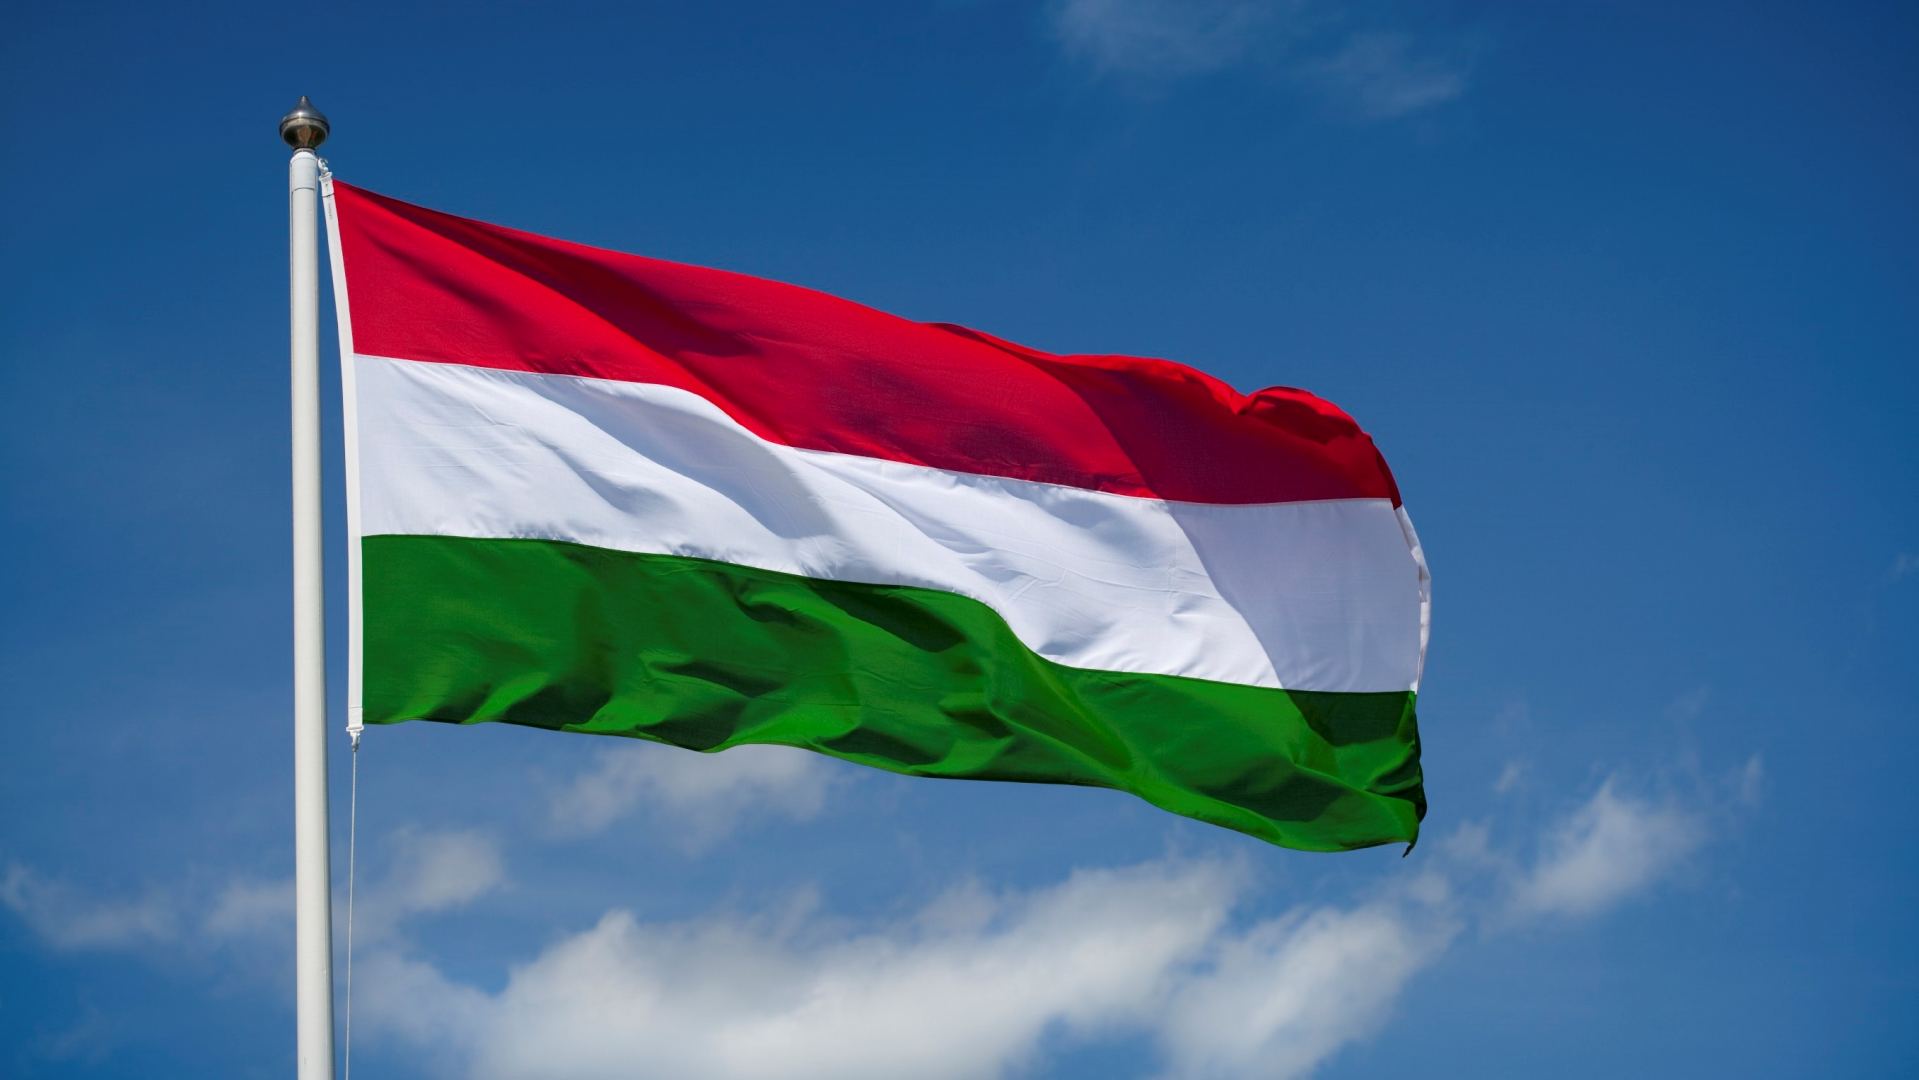 Macarıstan Azərbaycanın ərazi bütövlüyünü dəstəkləməkdə davam edir - Nazir